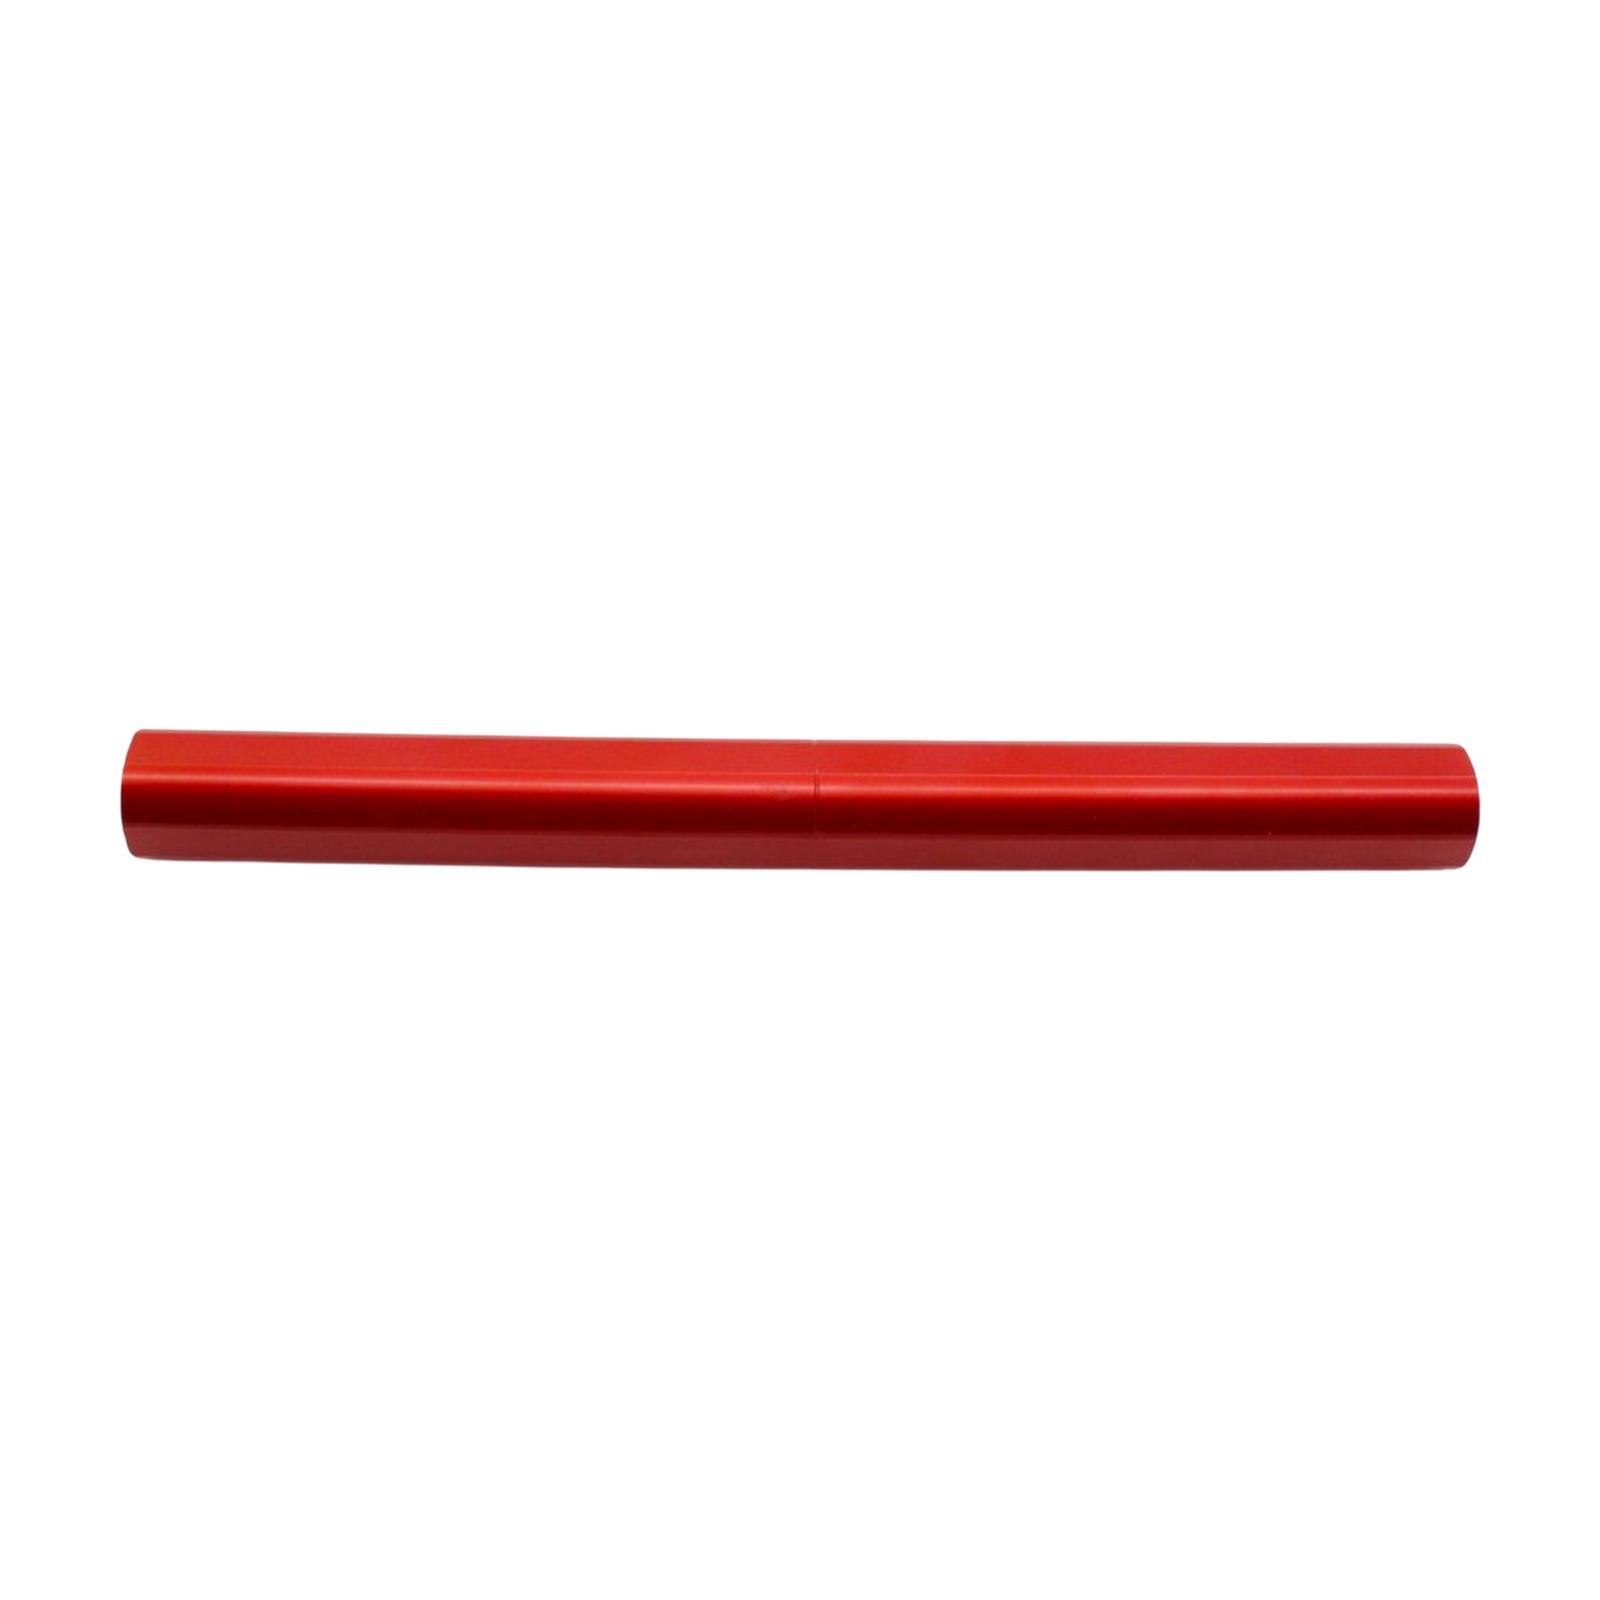 Reinforcing Bracket Stabilizer Rod for   125 Red